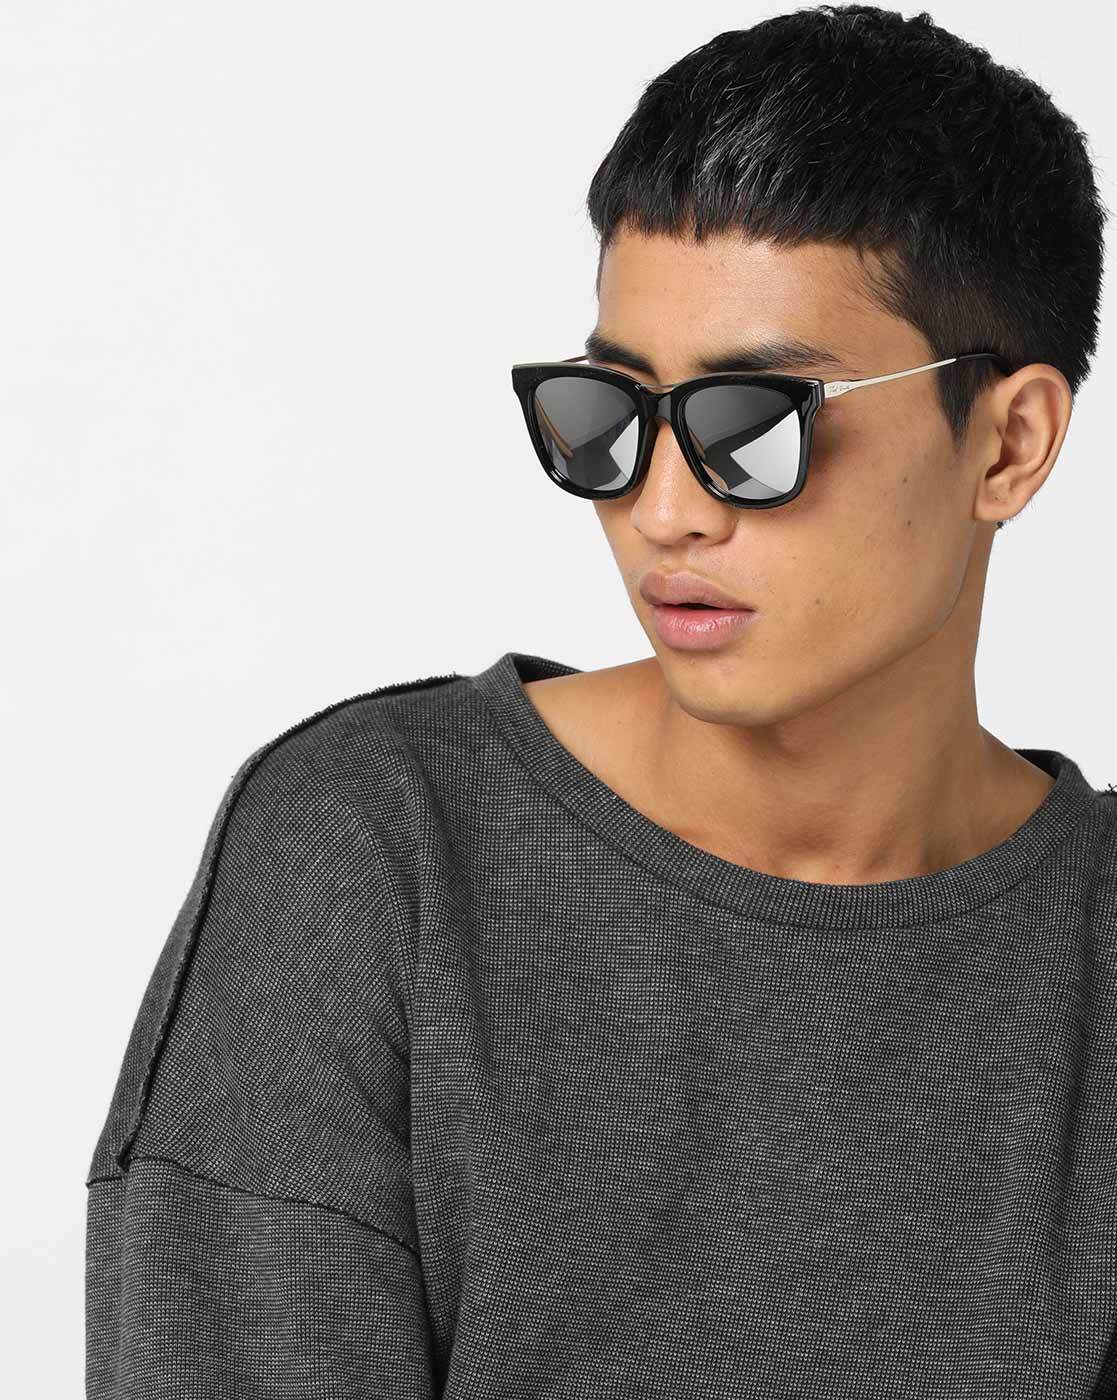 wayfarer mirrored sunglasses